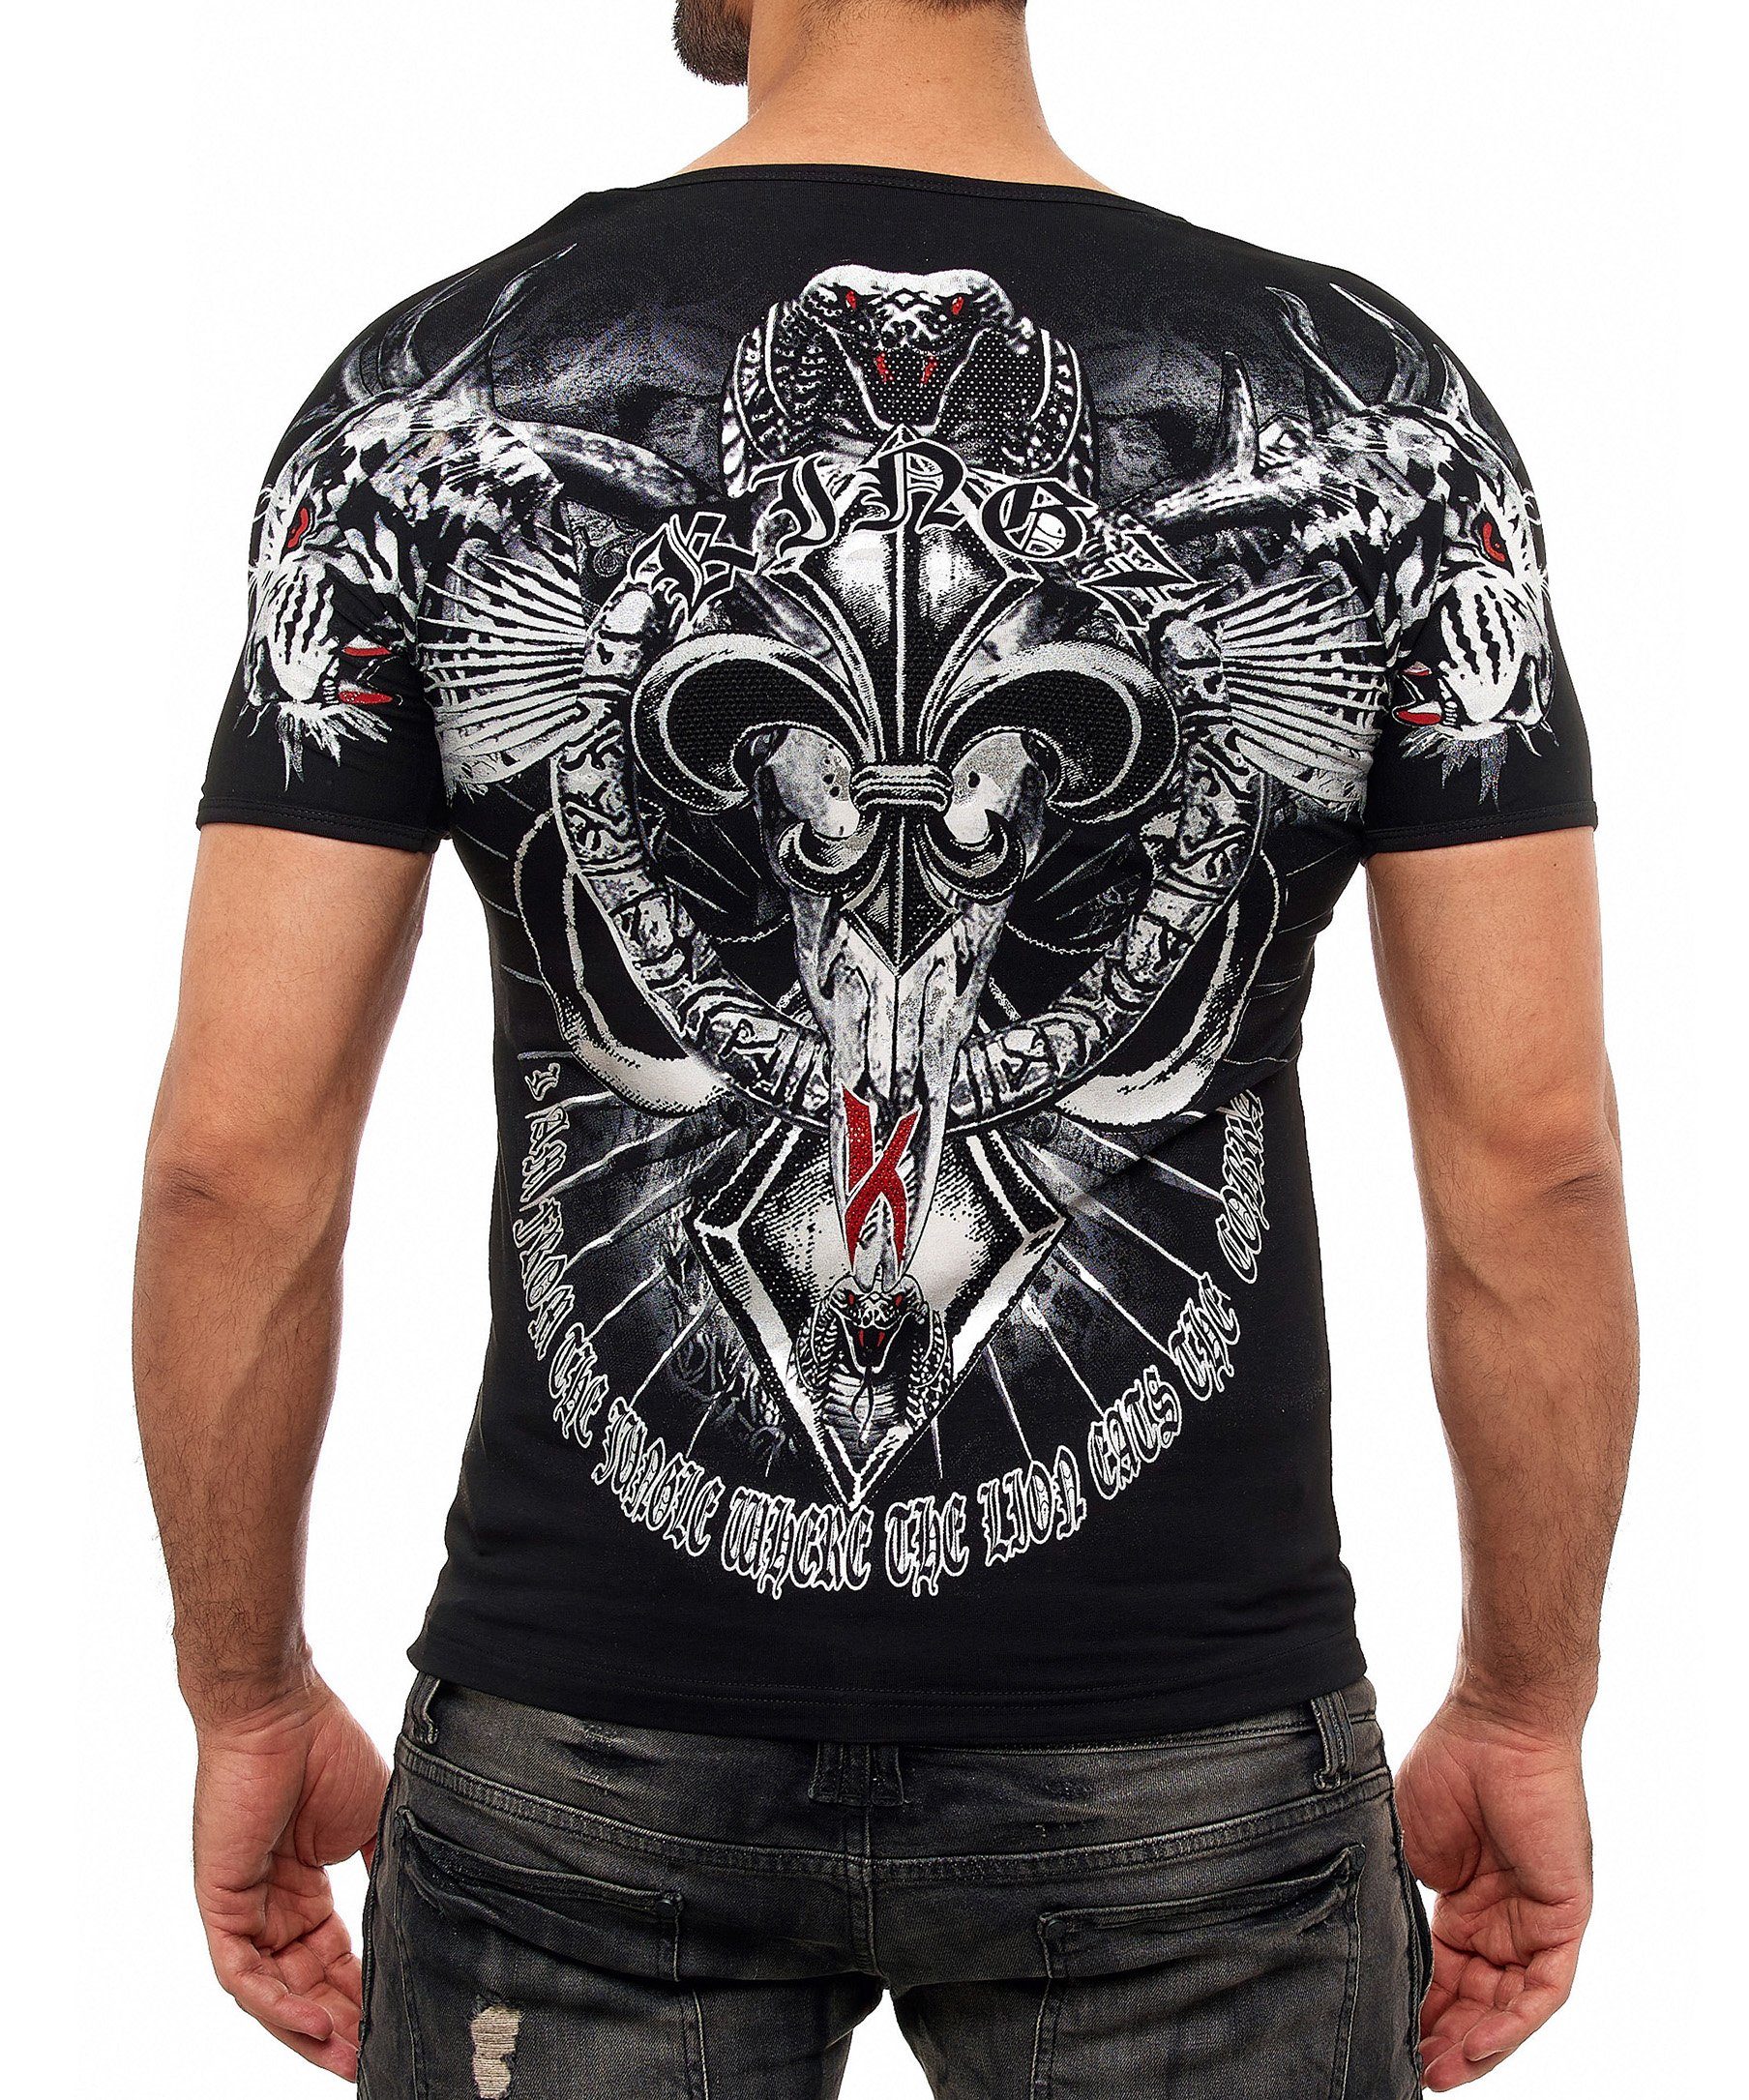 ausgefallenem T-Shirt KINGZ Cobra-Lilien-Print mit schwarz-silberfarben